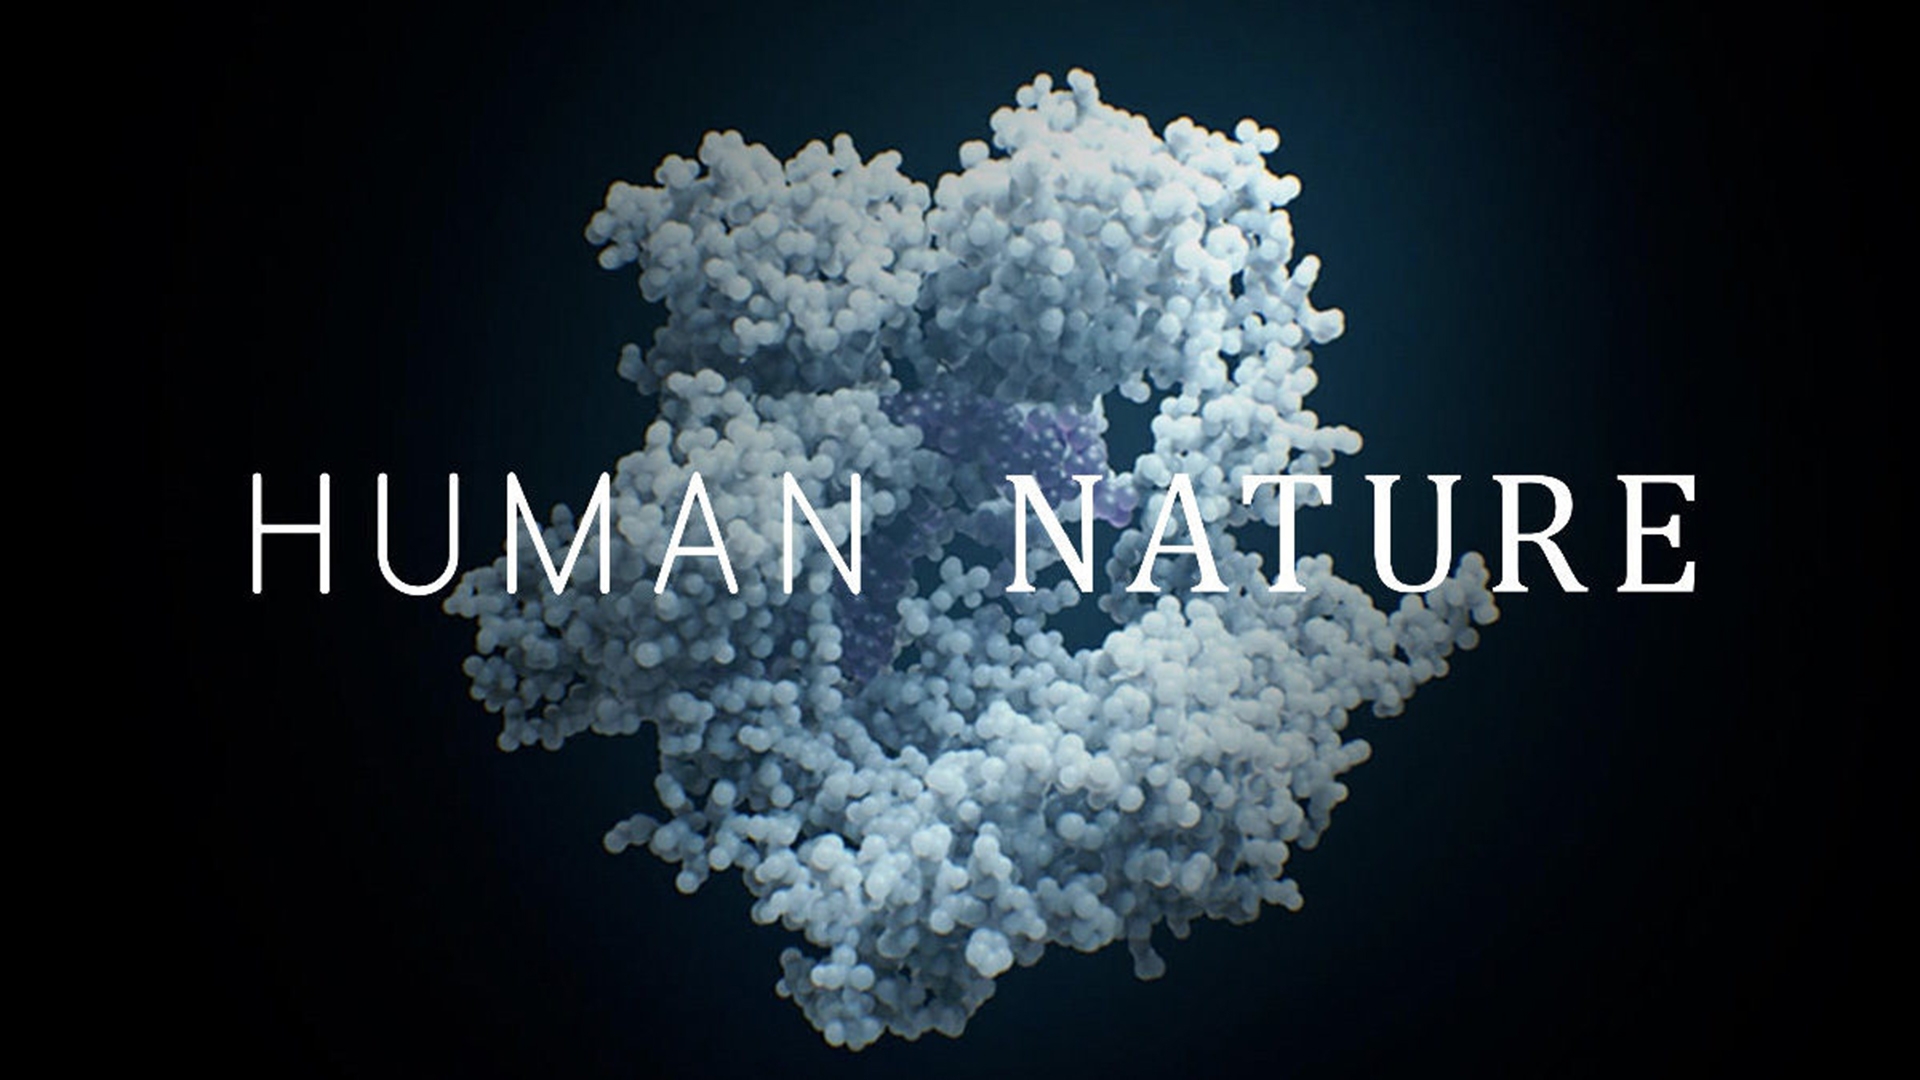 Human Nature Movie: CRISPR Makes Screen Debut